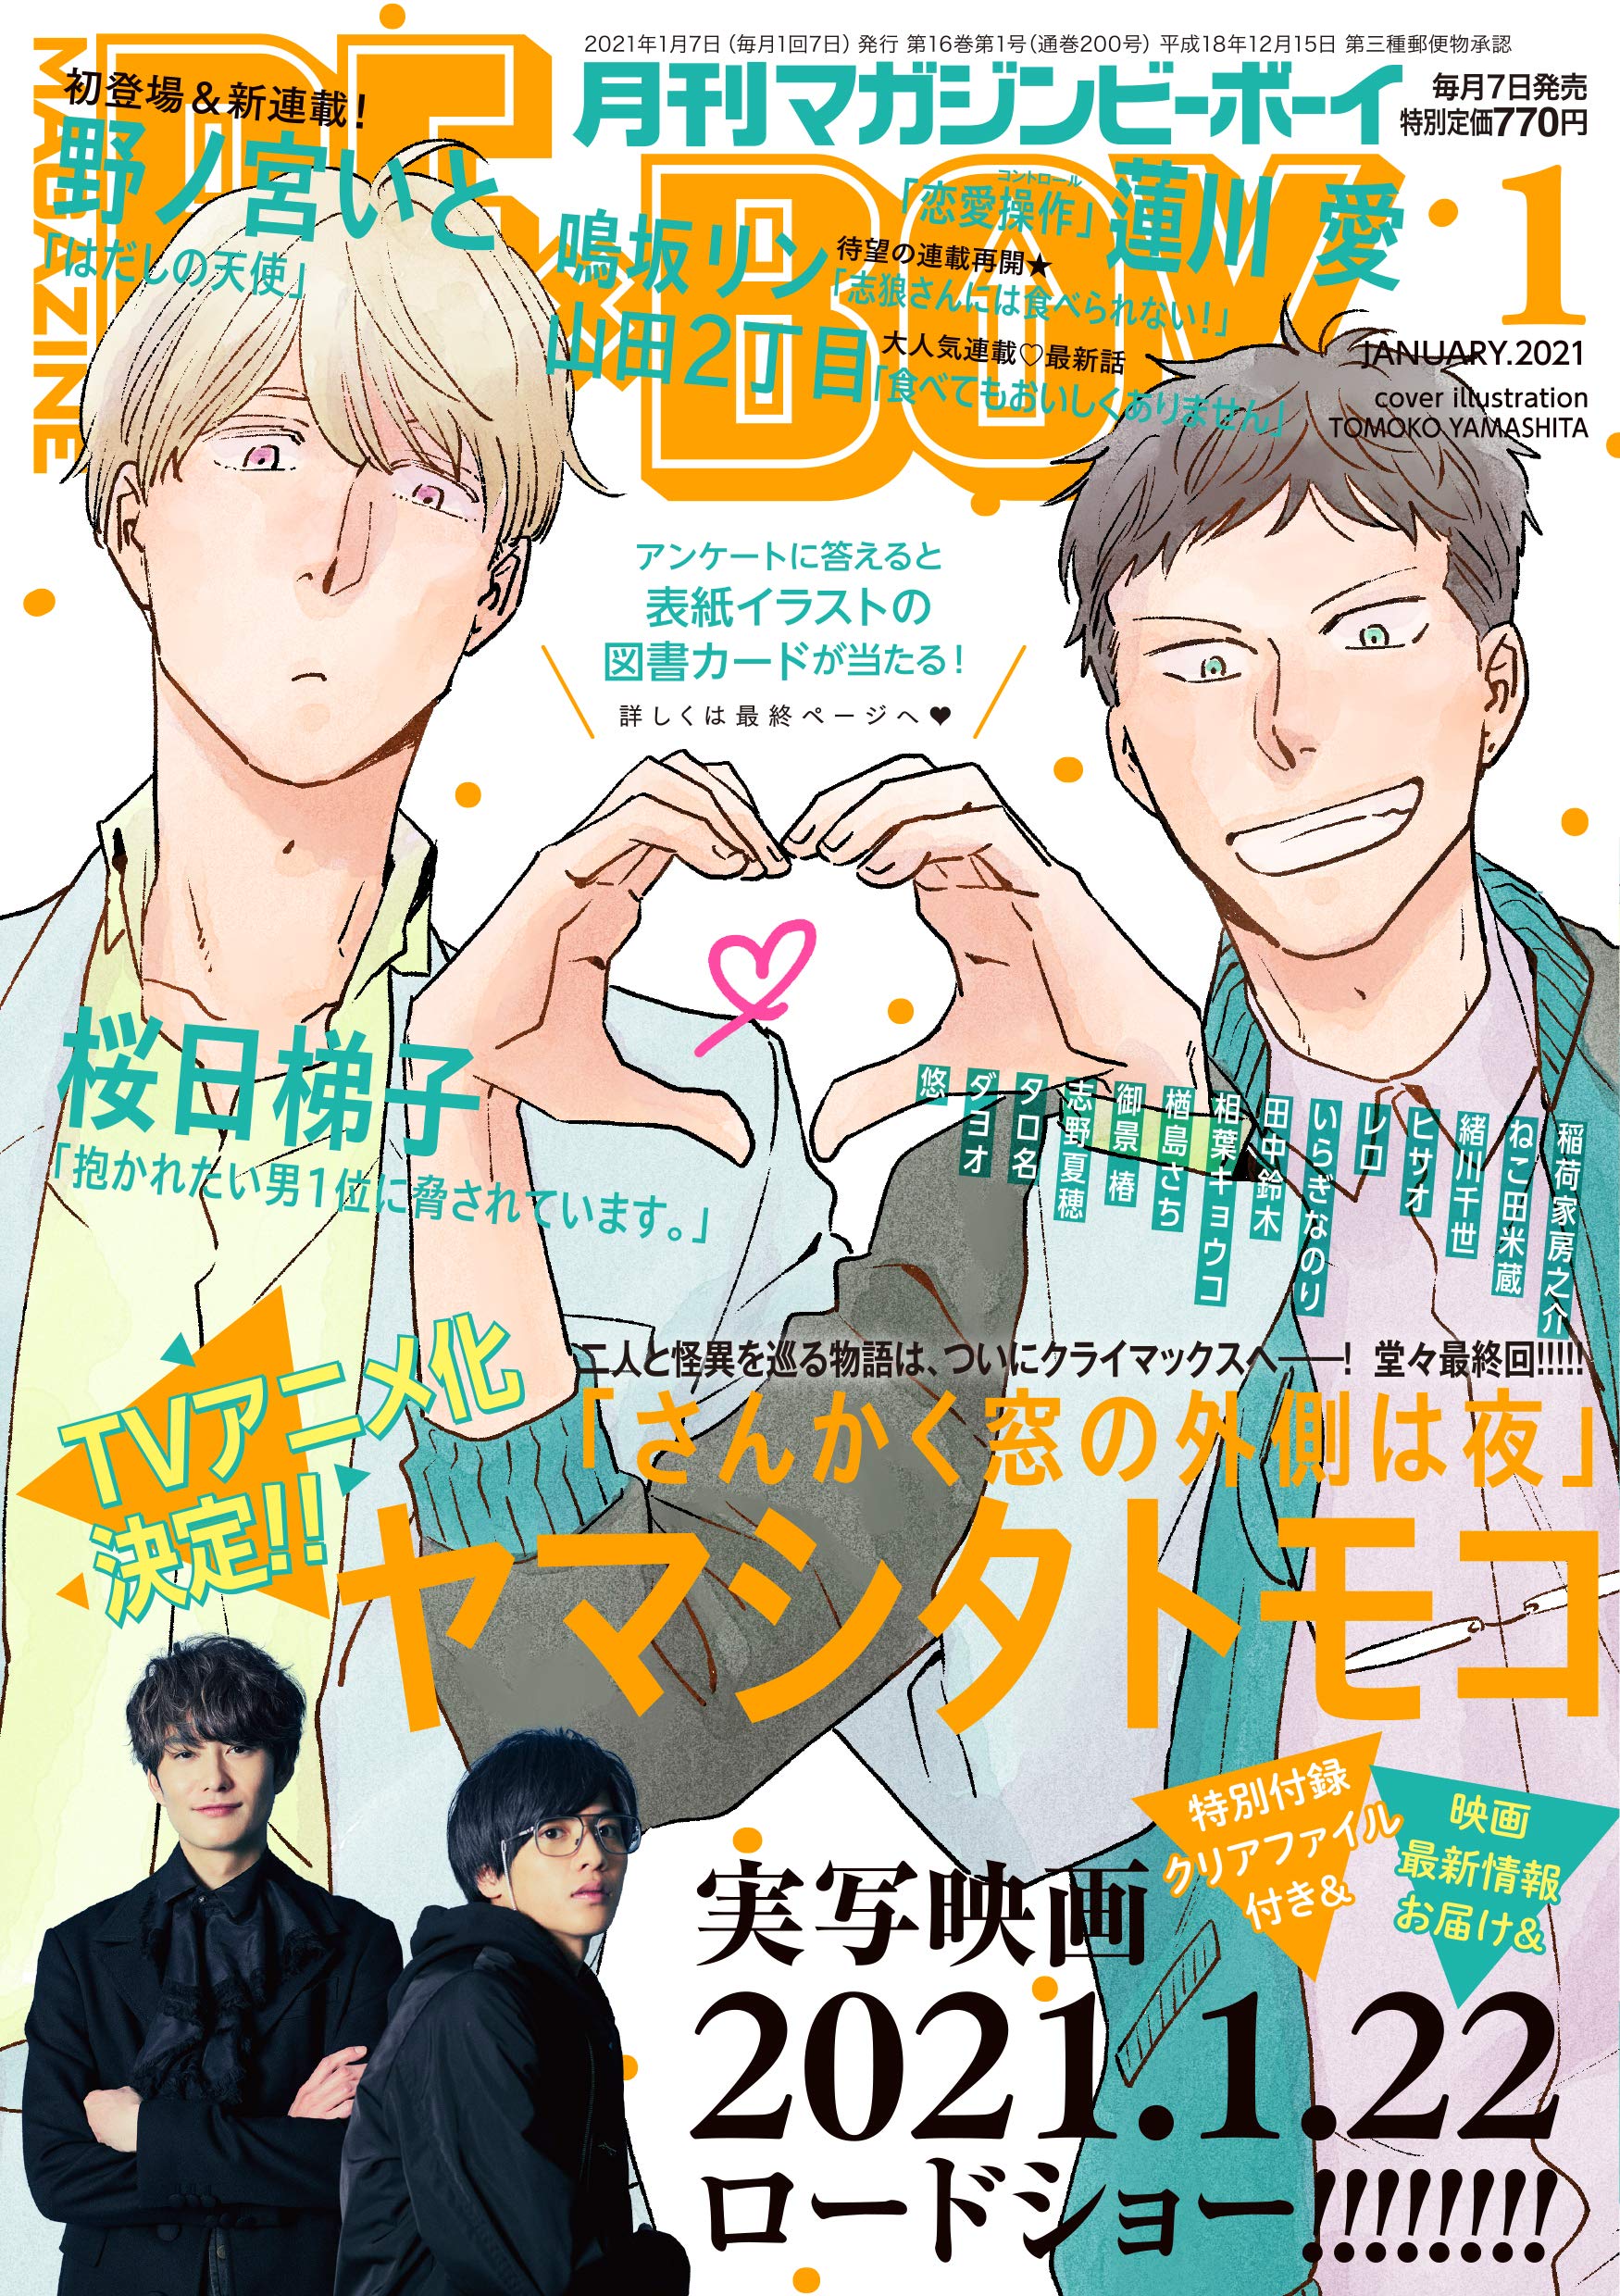 Boys Love (Yaoi) Magazine - MAGAZINE BE×BOY (MAGAZINE BE×BOY (マガジンビーボーイ) 2021年01月号 [雑誌]) / Shino Natsuho & Nekota Yonezou & Yamashita Tomoko & Hasukawa Ai & Tanaka Suzuki